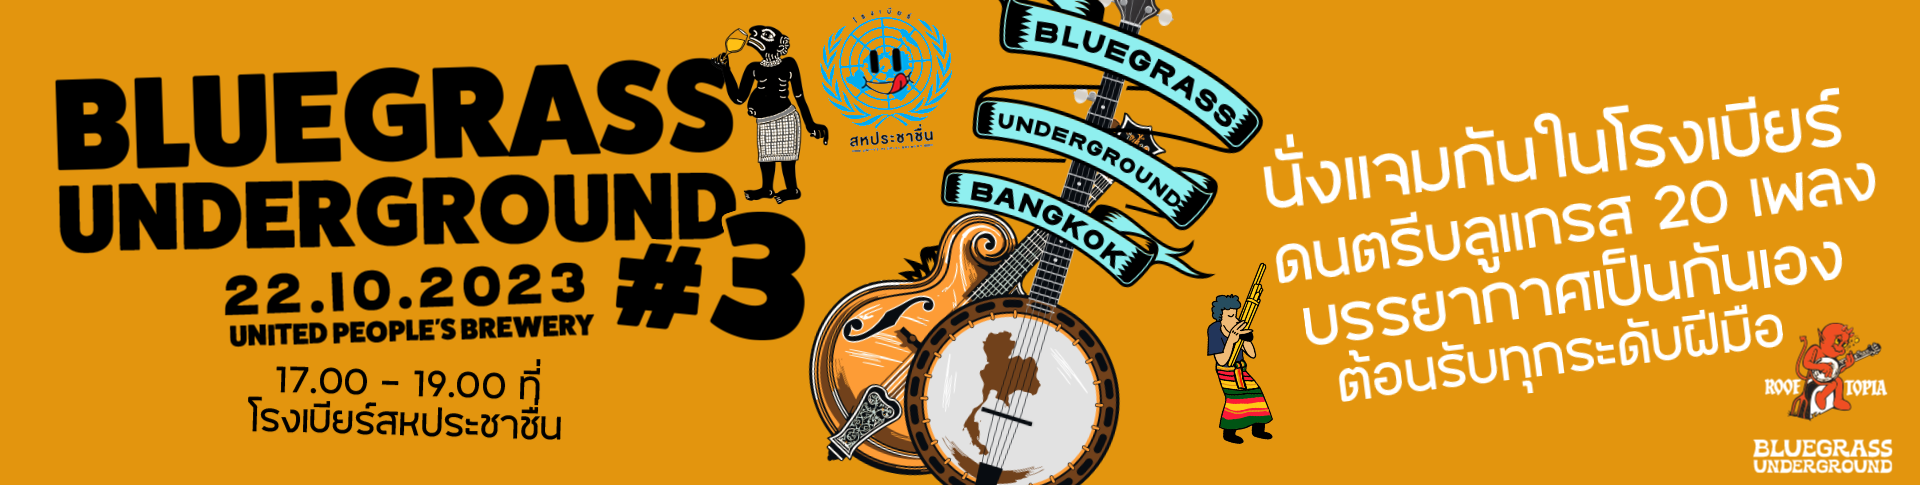 Bluegrass Underground #3